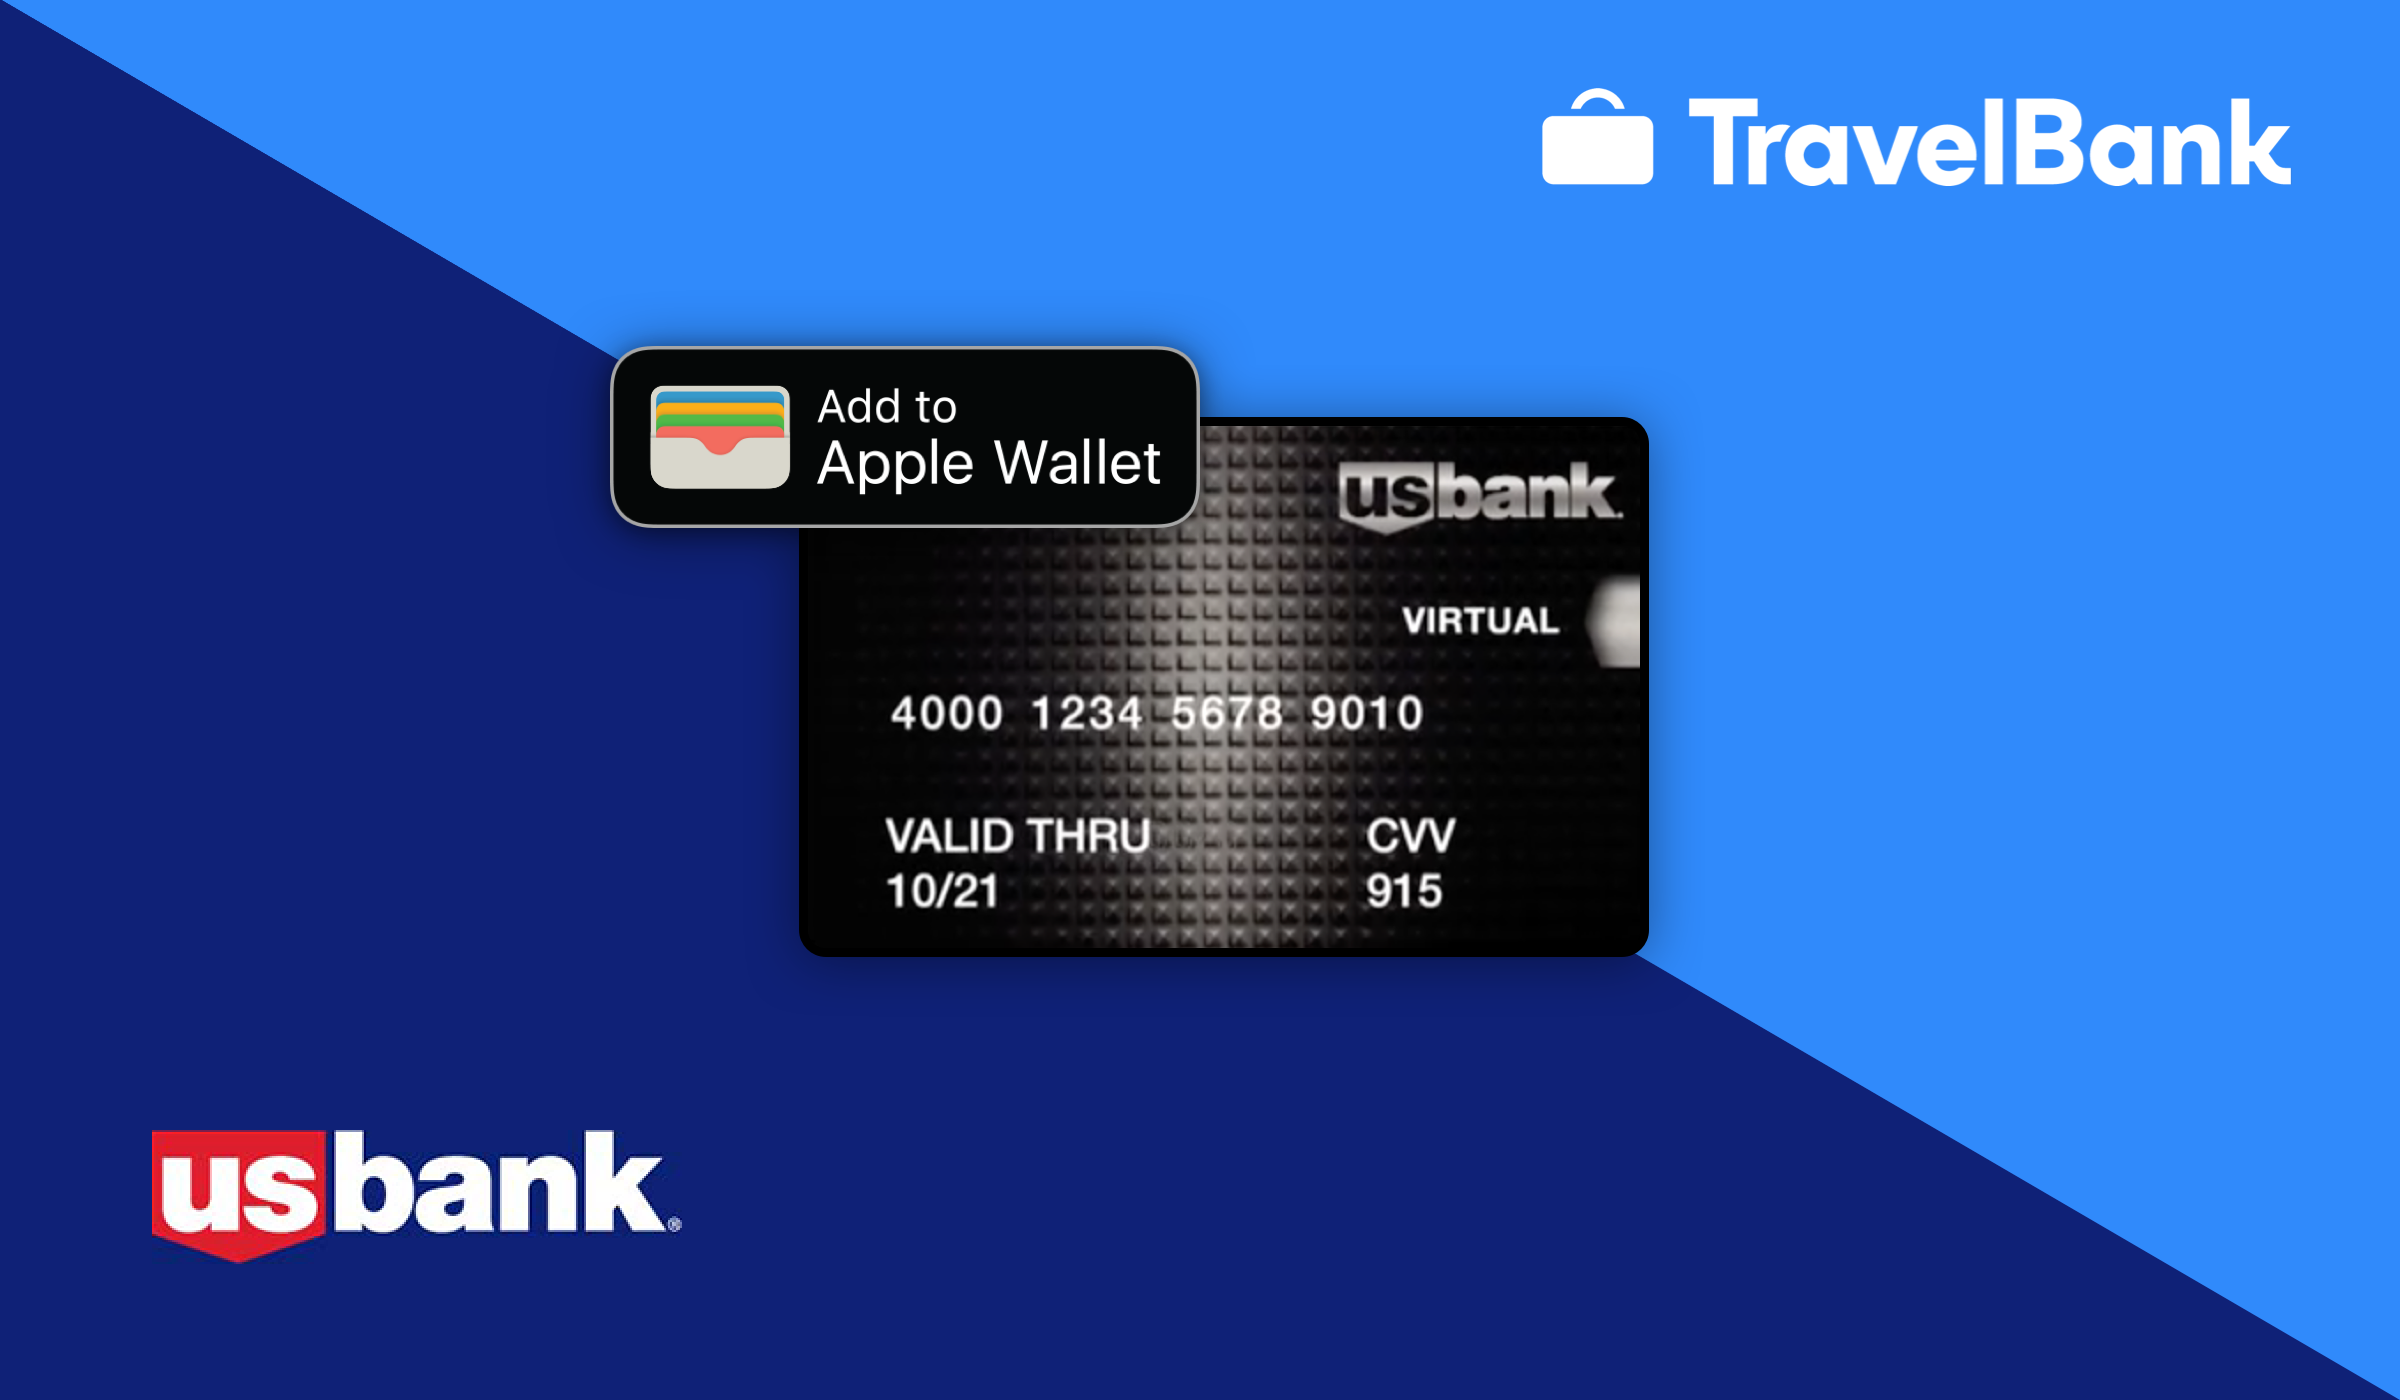 TravelBank and U.S. Bank logos and virtual card